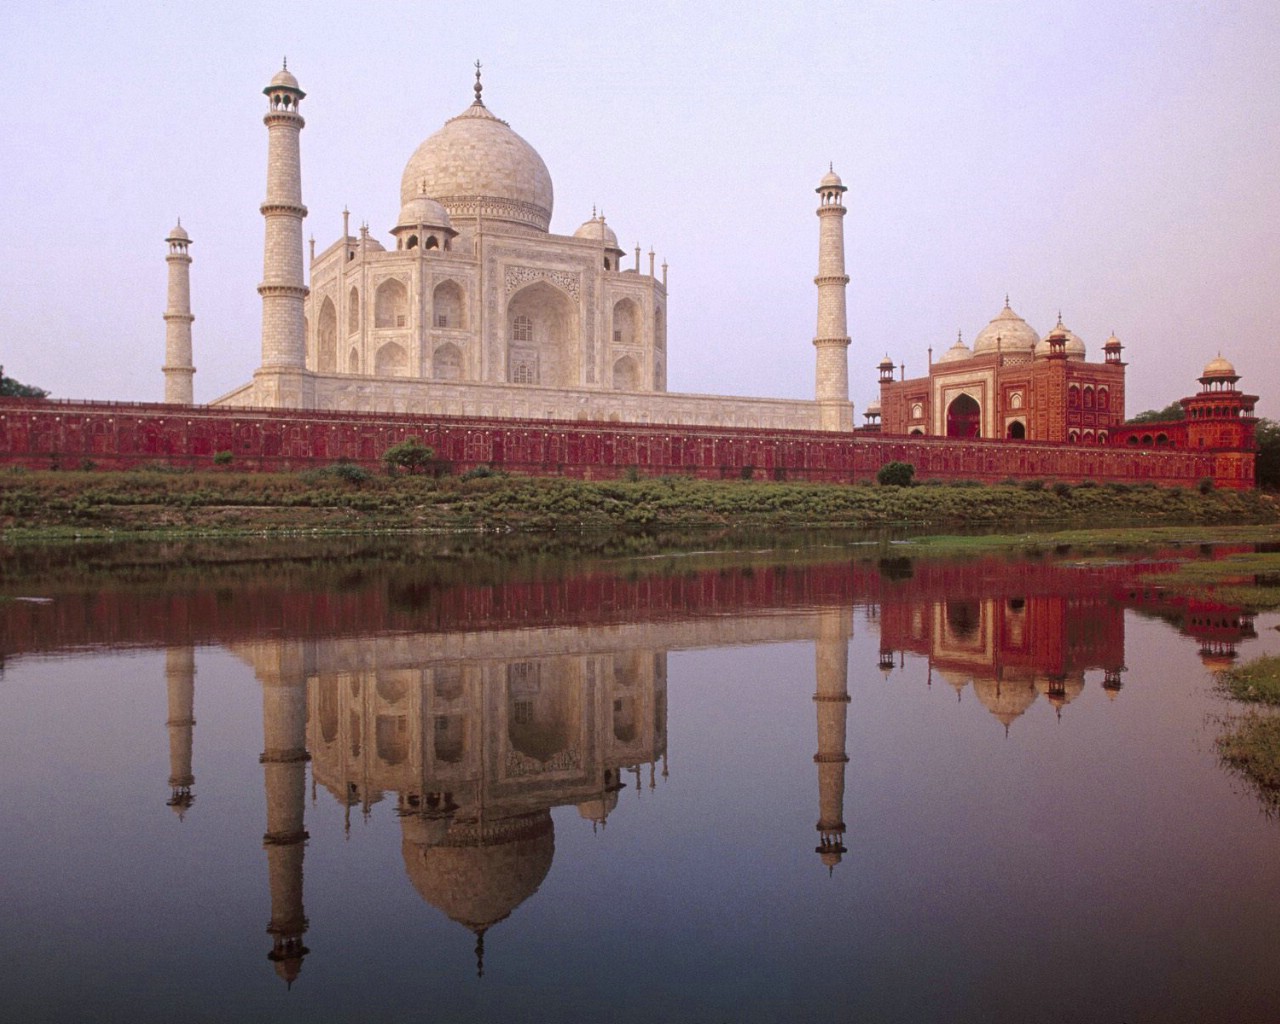 壁纸1280x1024文化之旅 地理人文景观壁纸精选 第一辑 Taj Mahal Agra Uttar Pradesh India 印度阿格拉 泰姬陵图片壁纸壁纸 文化之旅地理人文景观(一)壁纸 文化之旅地理人文景观(一)图片 文化之旅地理人文景观(一)素材 人文壁纸 人文图库 人文图片素材桌面壁纸